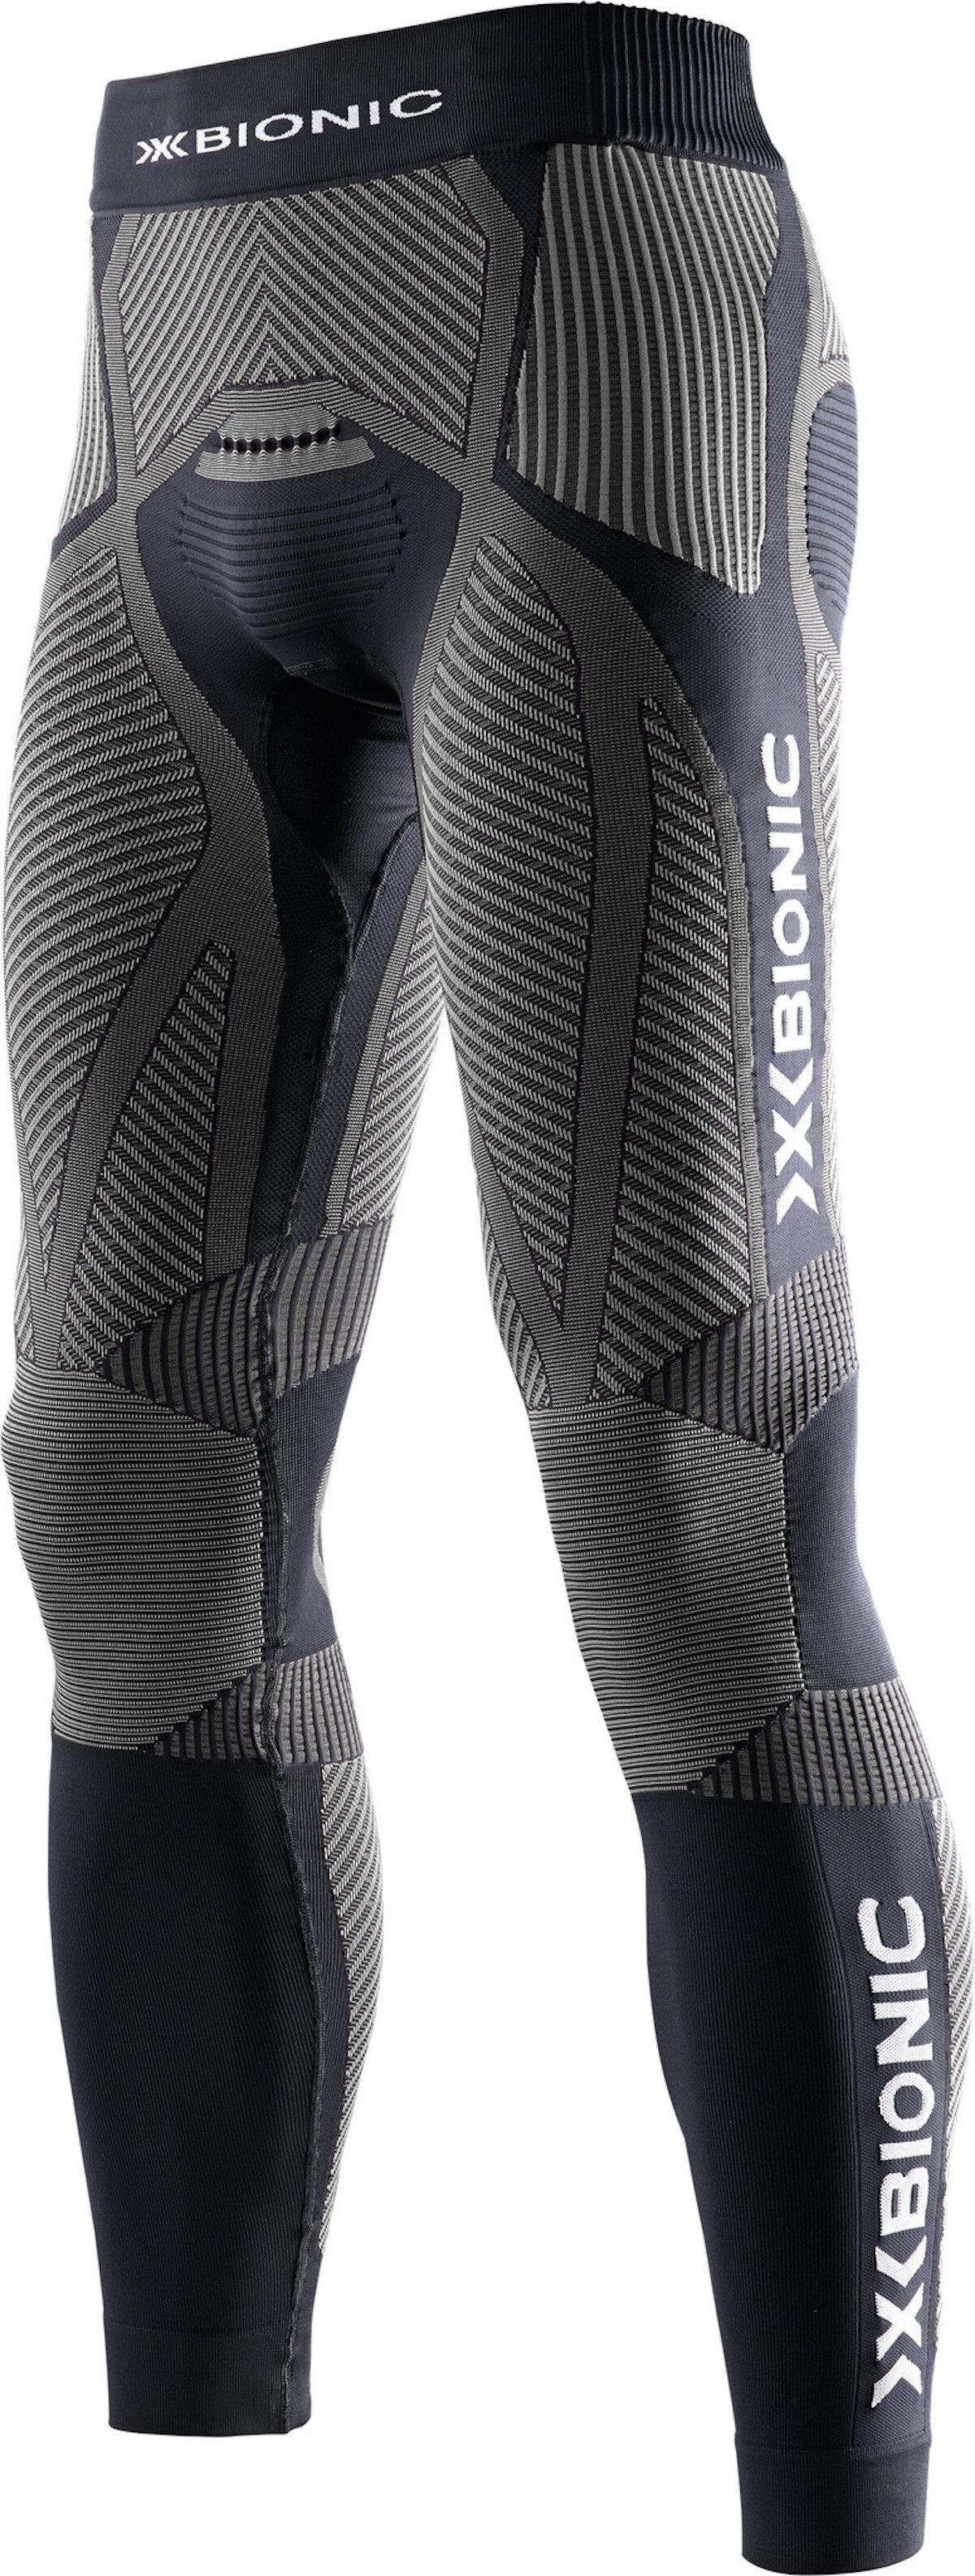 X-Bionic - The Trick Running Pants Long - Running tights - Men's